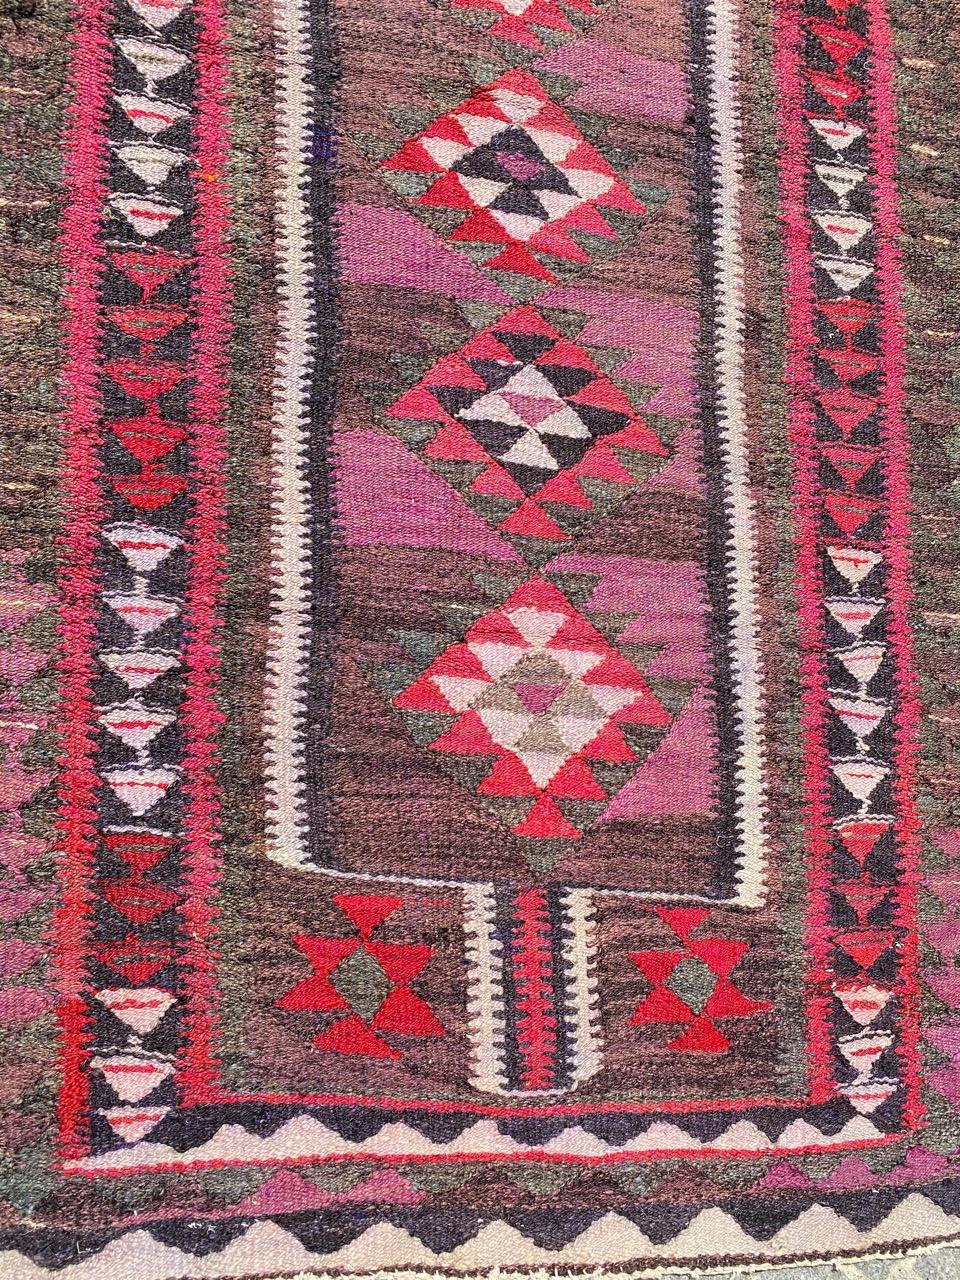 Joli Kilim turc du milieu du siècle avec un beau design géométrique et de belles couleurs, entièrement tissé à la main avec de la laine sur une base de coton.

✨✨✨
